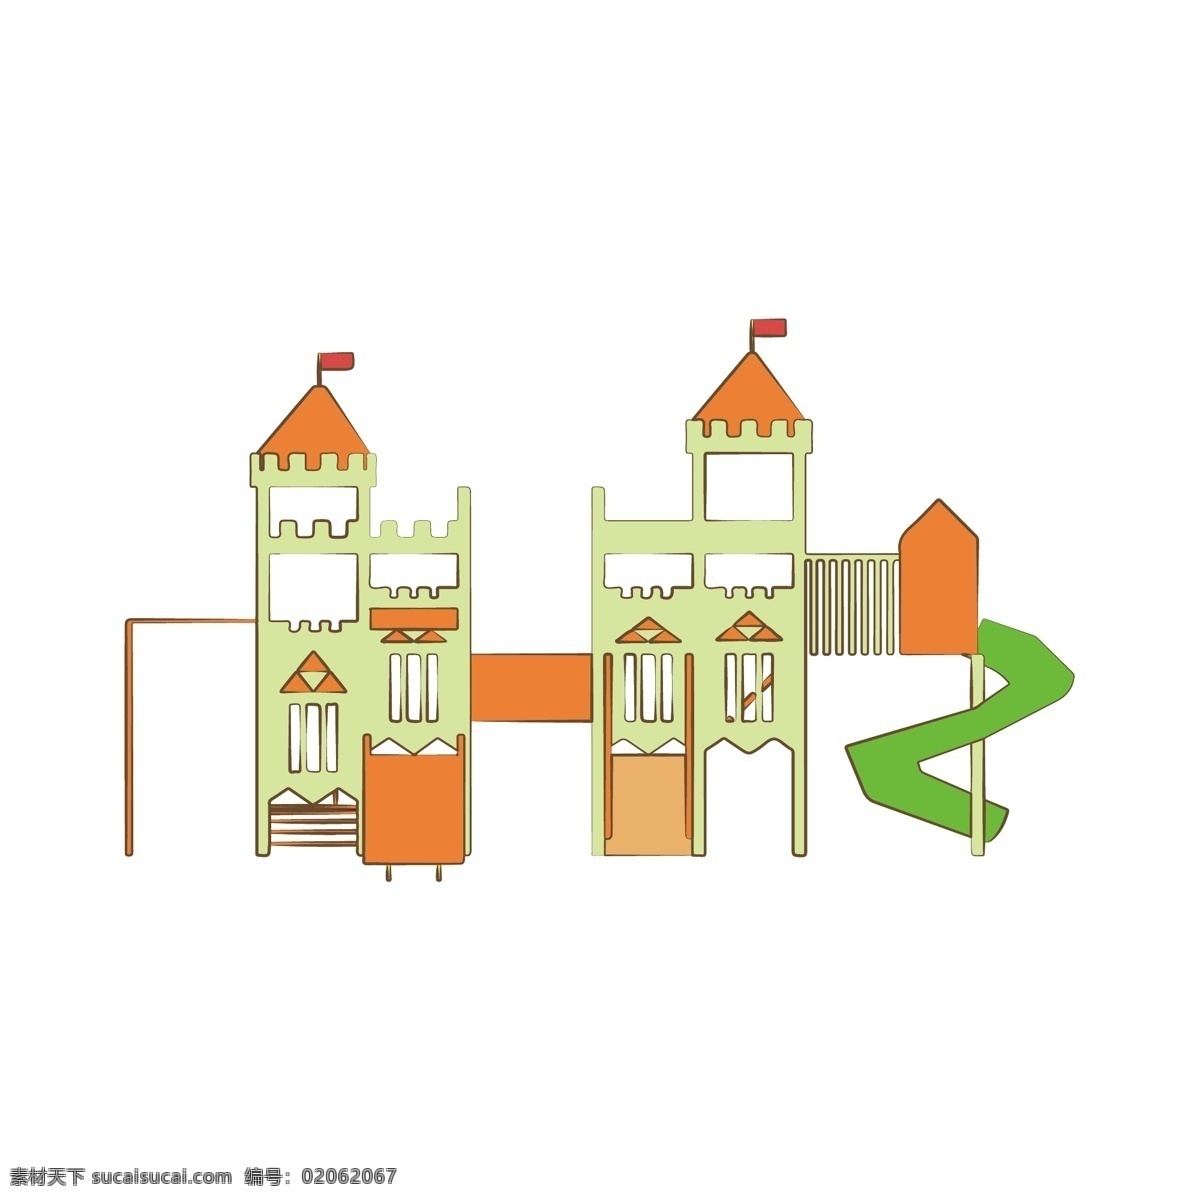 简约 扁平 卡通 儿童乐园 滑梯 插图 元素 幼儿园 城堡 设施